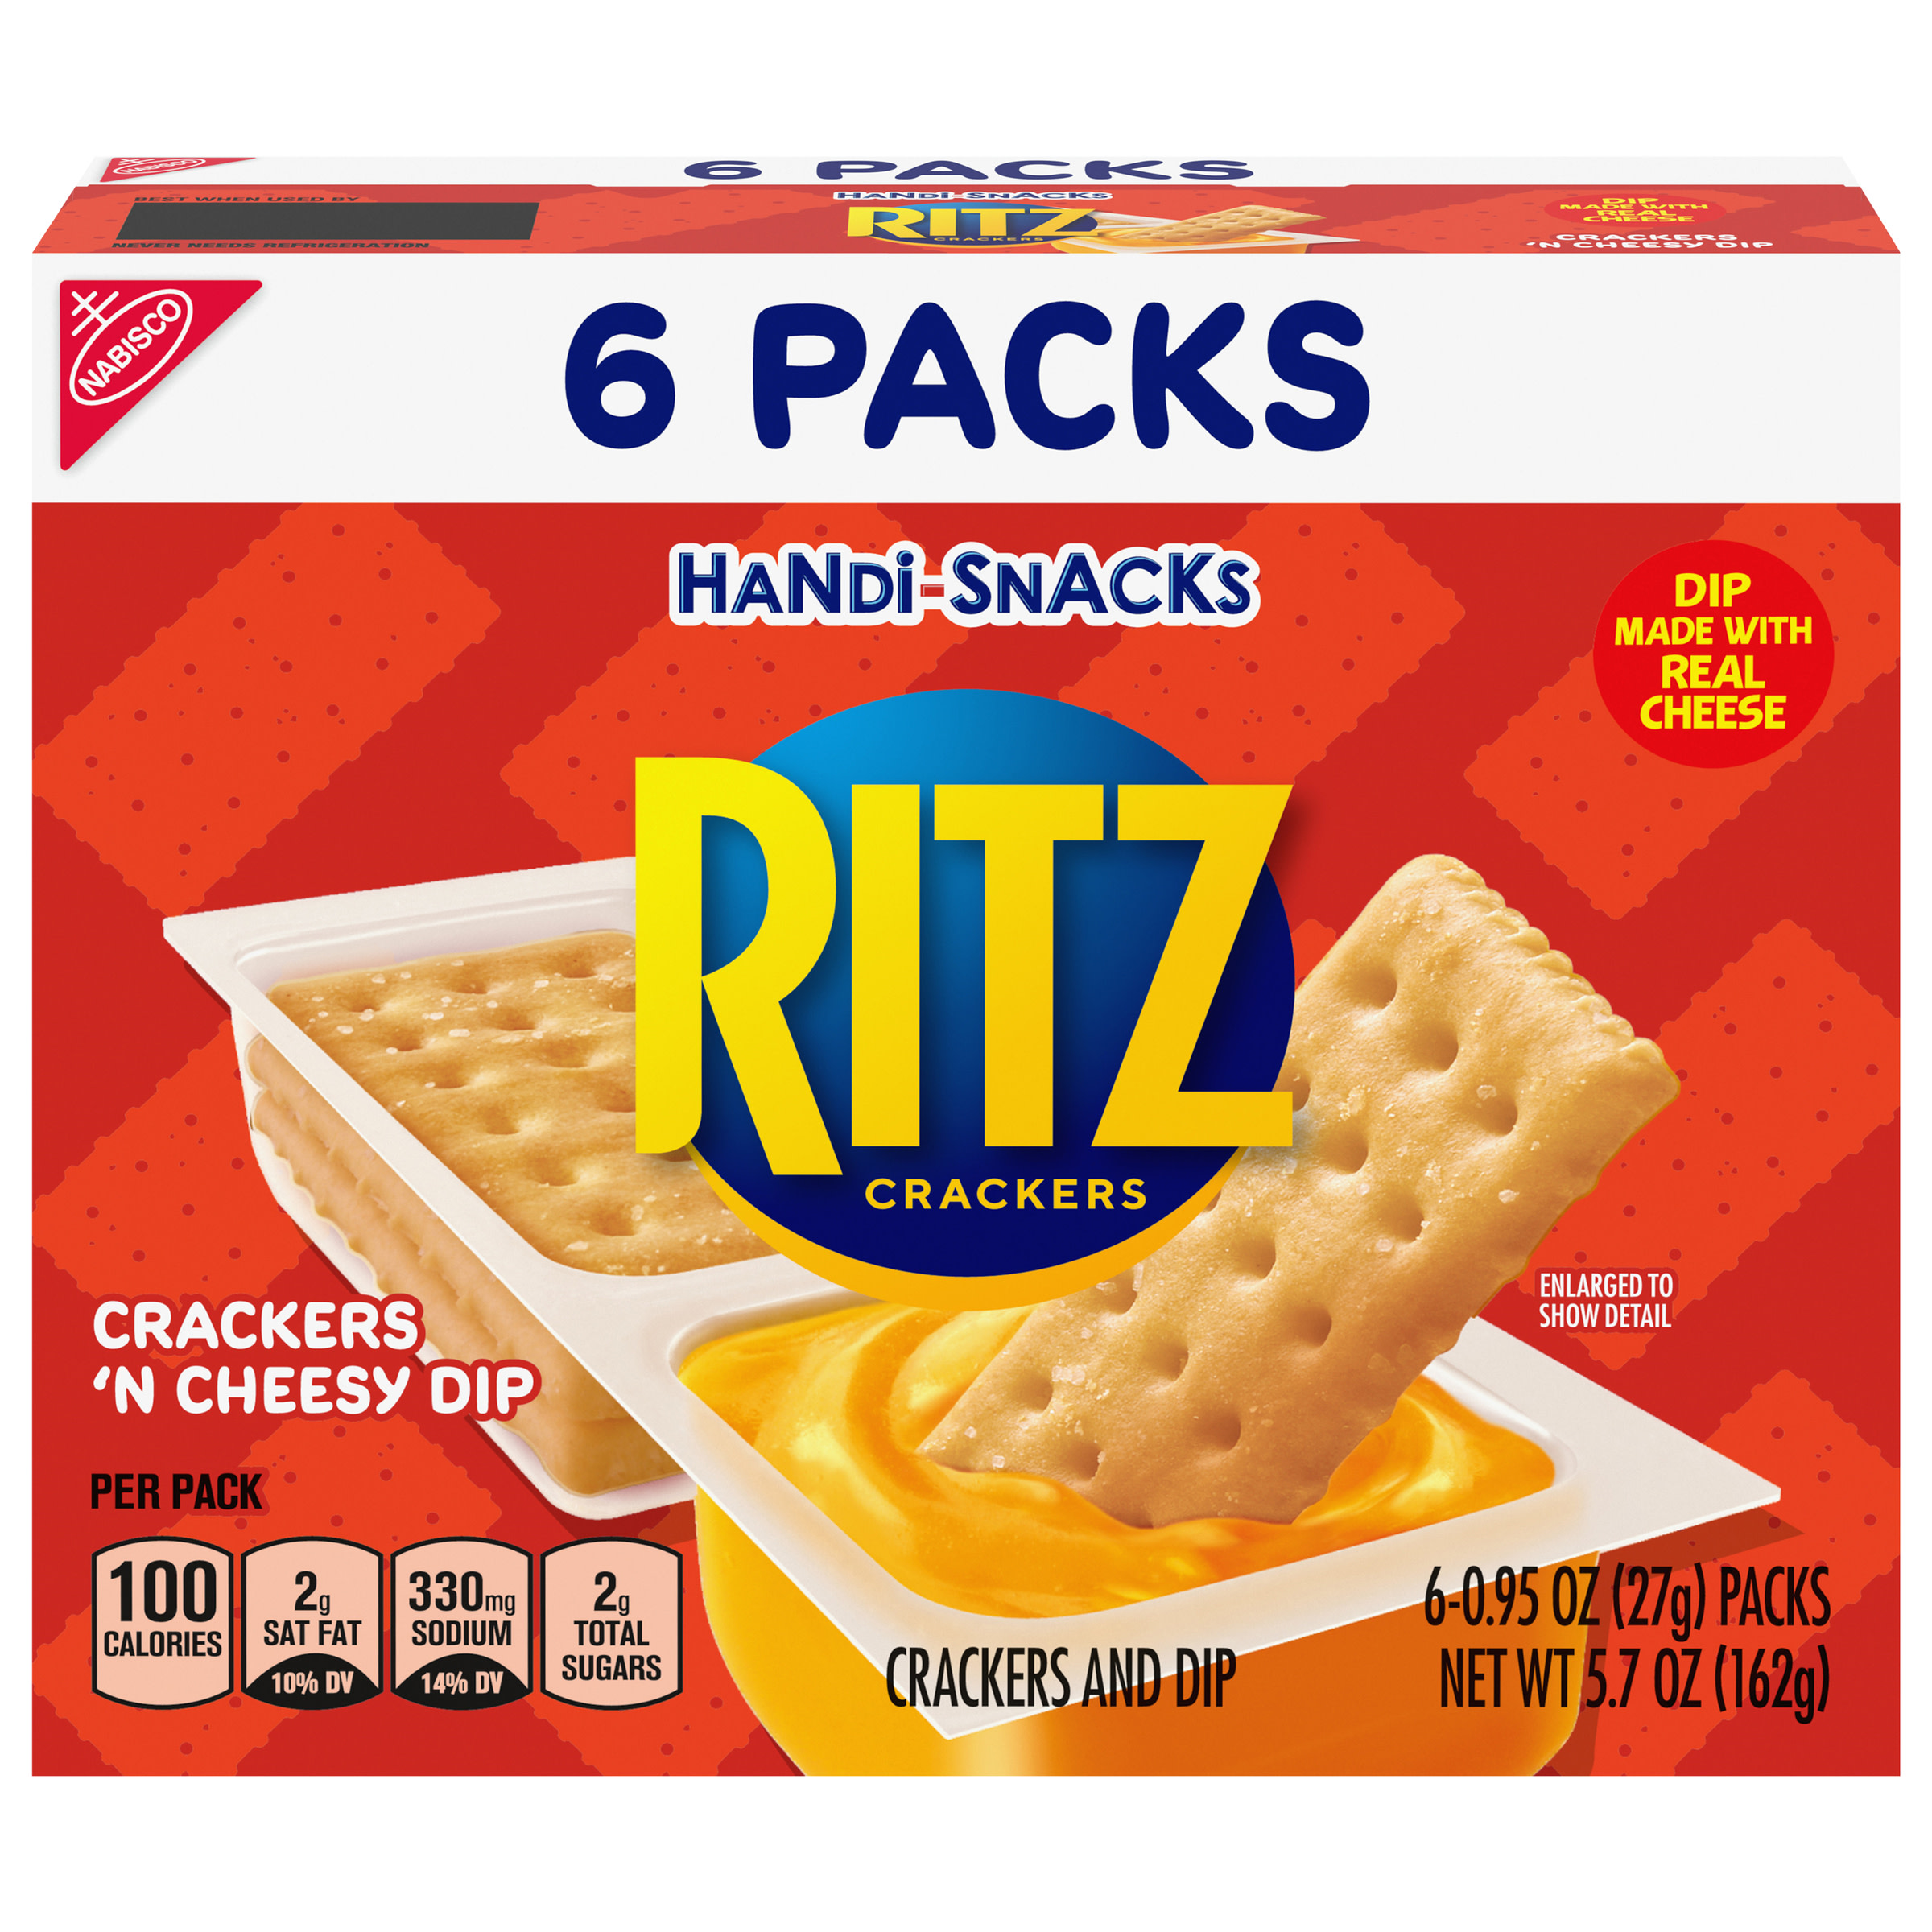 Handi-Snacks RITZ Crackers 'N Cheesy Dip Snack Packs, 6 Snack Packs - image 1 of 14